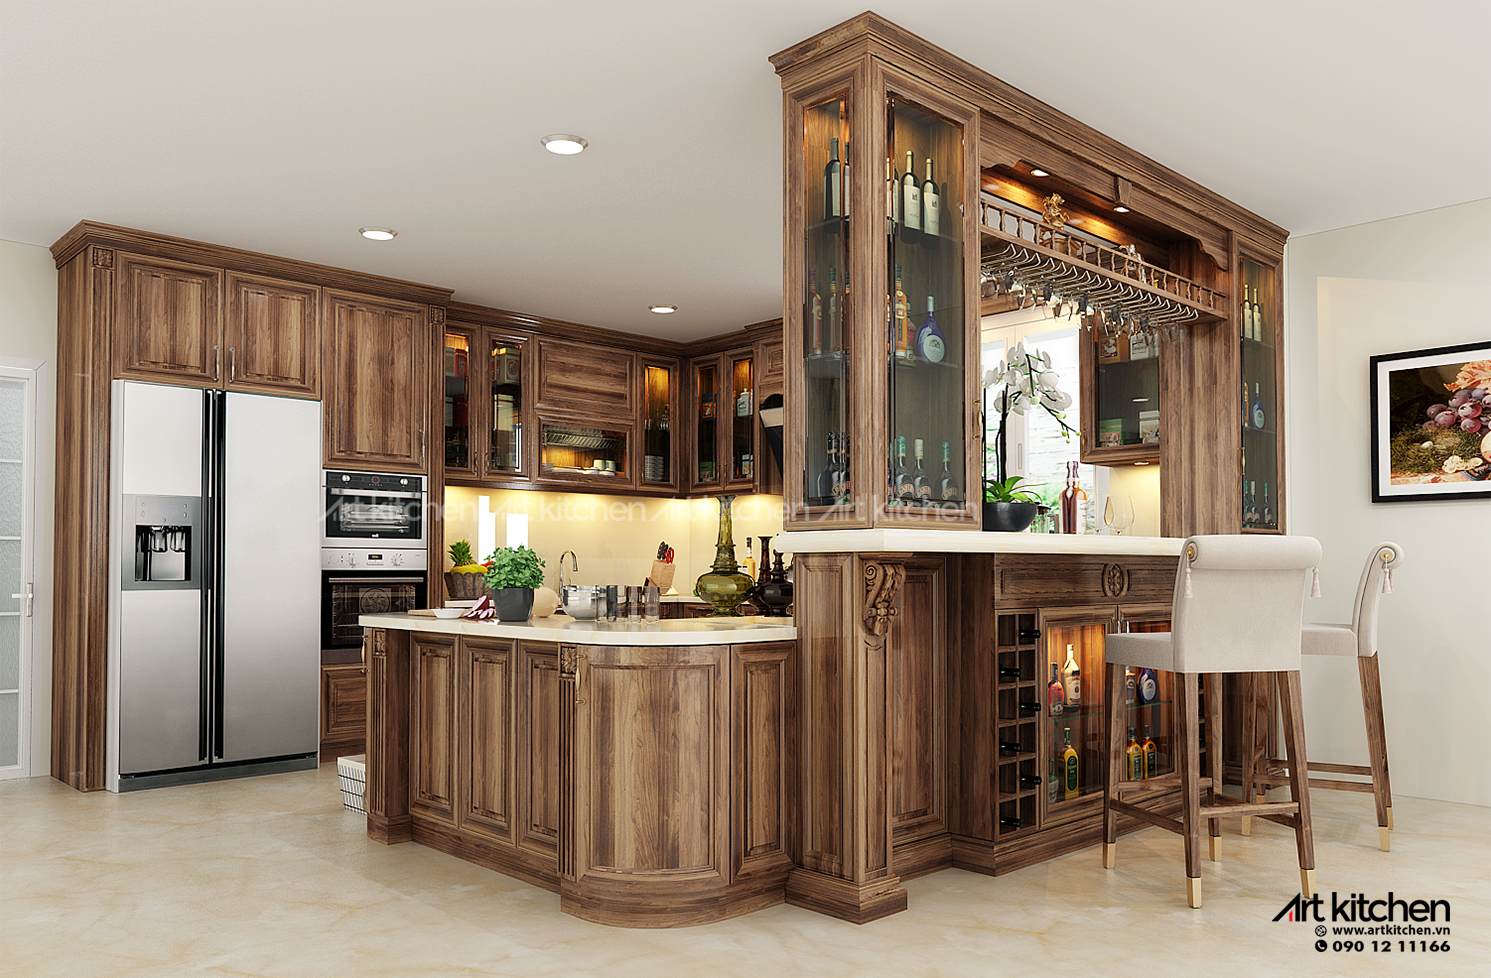 Nội, ngoại thất: tủ bếp gỗ tự nhiên sang trọng tại tủ bếp Artkitchen Tu-bep-go-oc-cho-2_bfabc23f00a14ad6ad4659bb20e63cbc_master